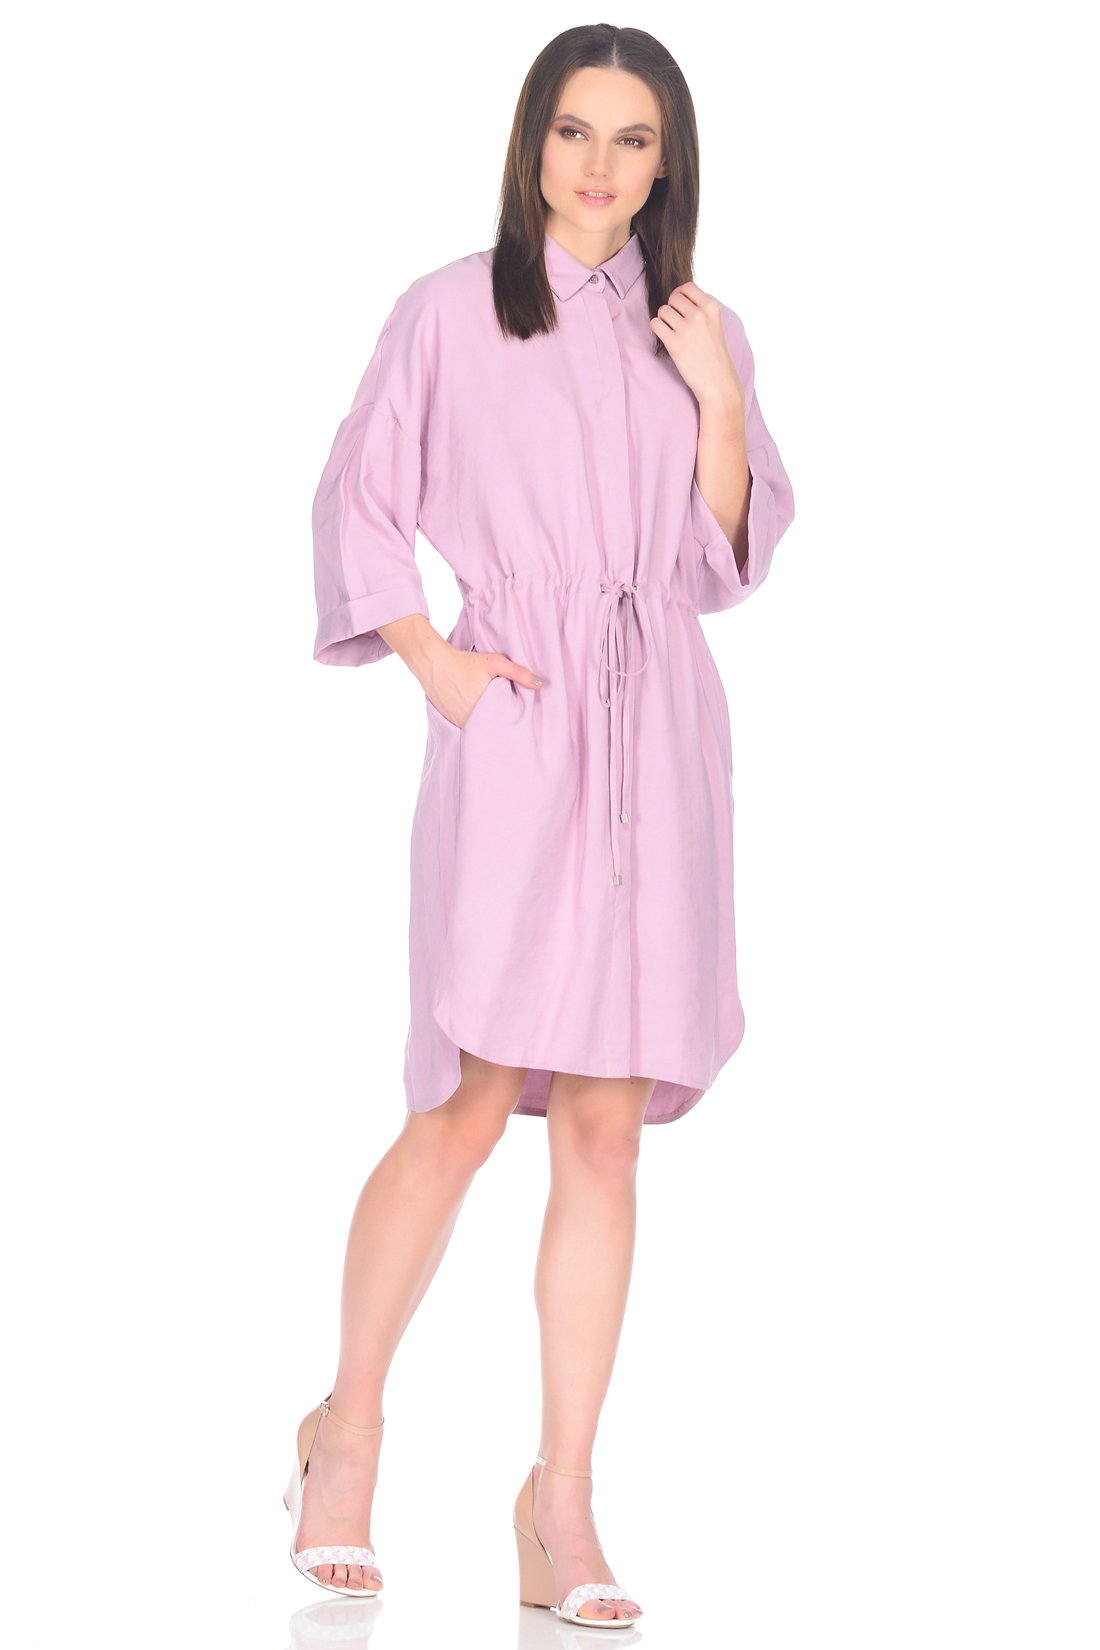 Платье-рубашка с потайной застёжкой (арт. baon B458019), размер M, цвет розовый Платье-рубашка с потайной застёжкой (арт. baon B458019) - фото 1